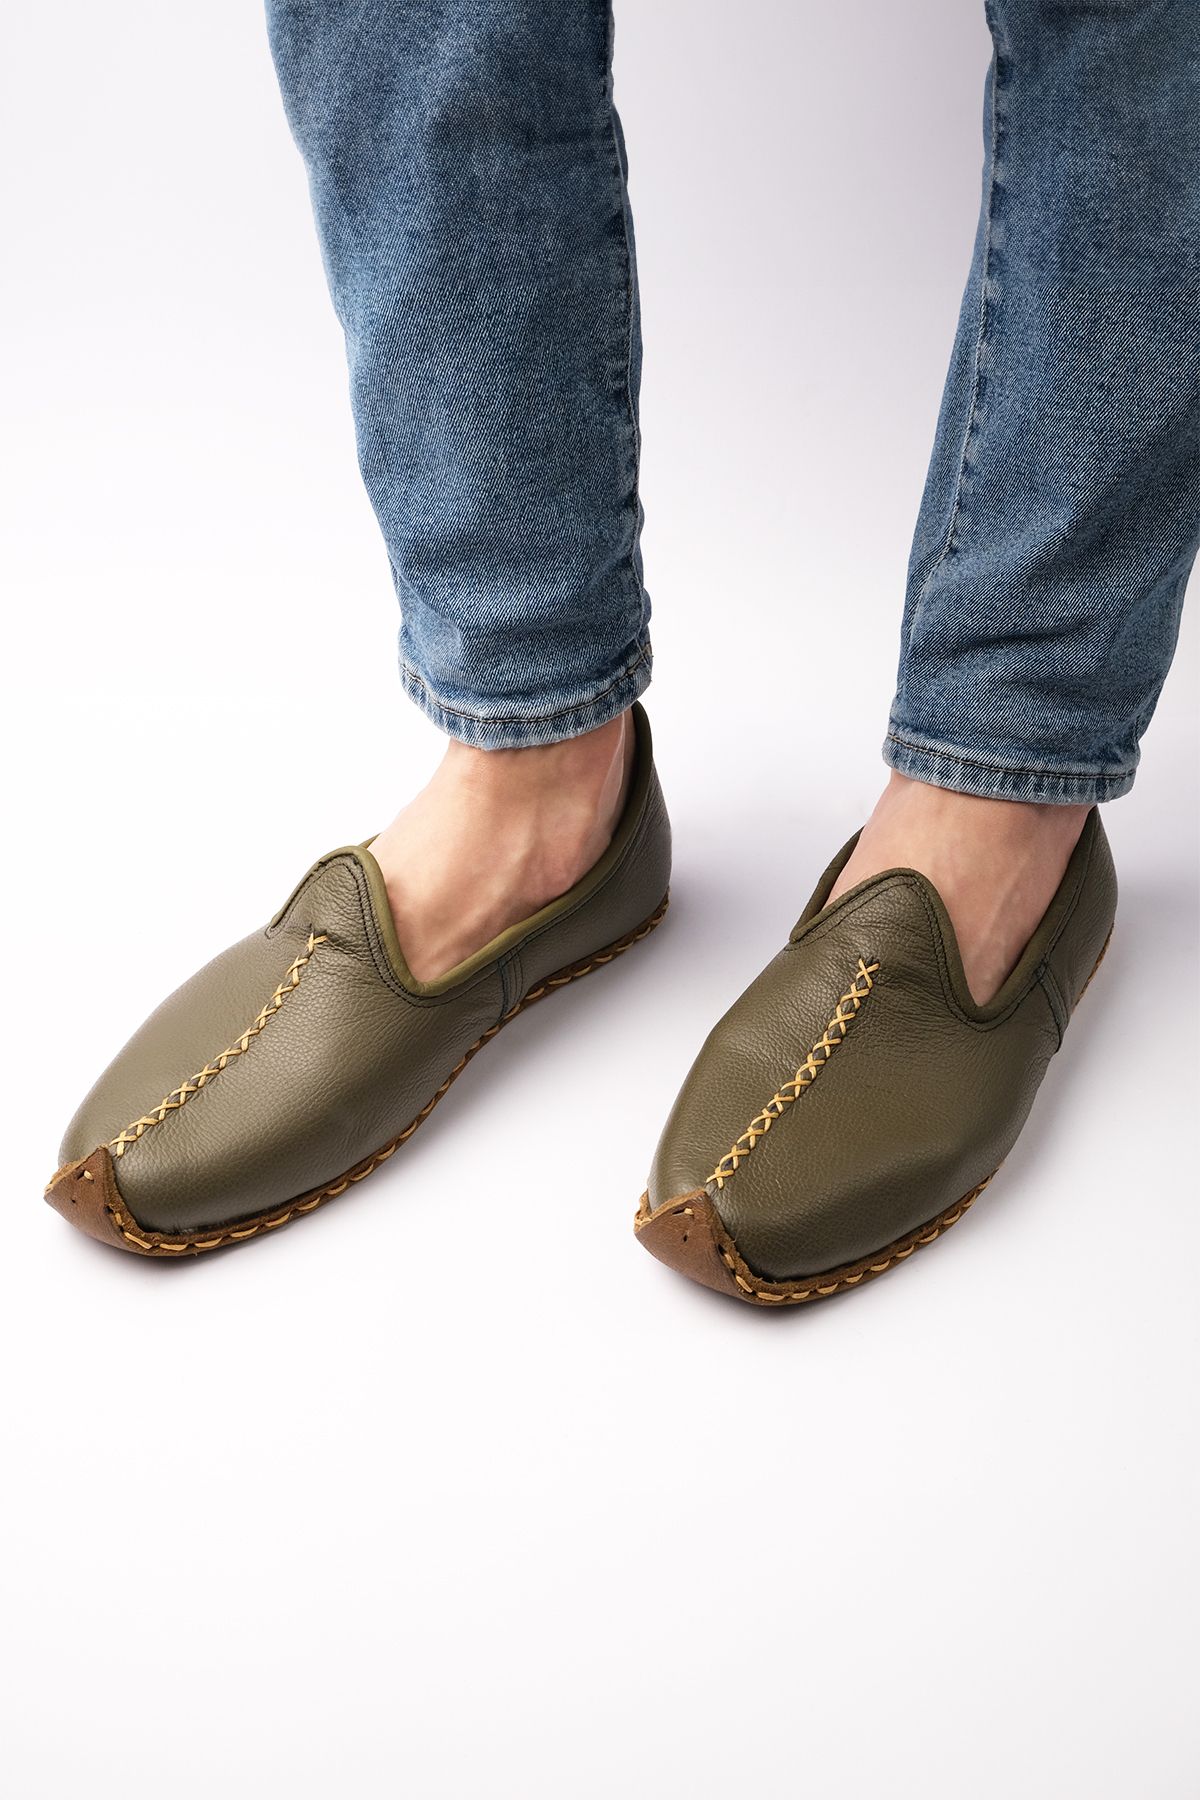 Atlas Handmade Shoes El Yapımı Hakiki Deri Çarık Model Unisex Yeşil Ayakkabı / Yemeni Ayakkabı / Babet